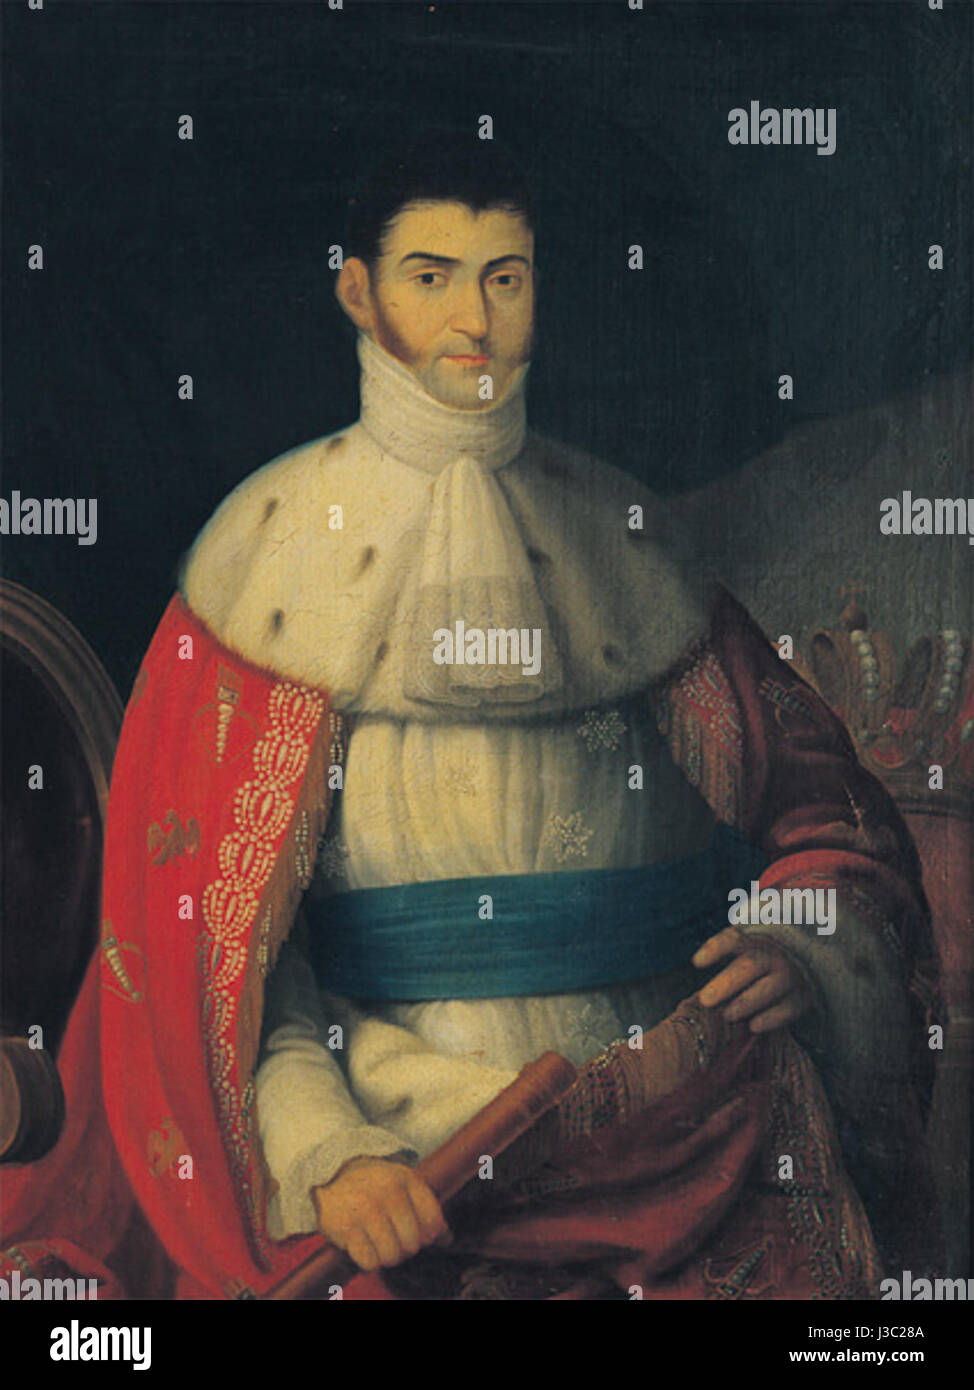 Emperador Agustin de Iturbide Stockfoto